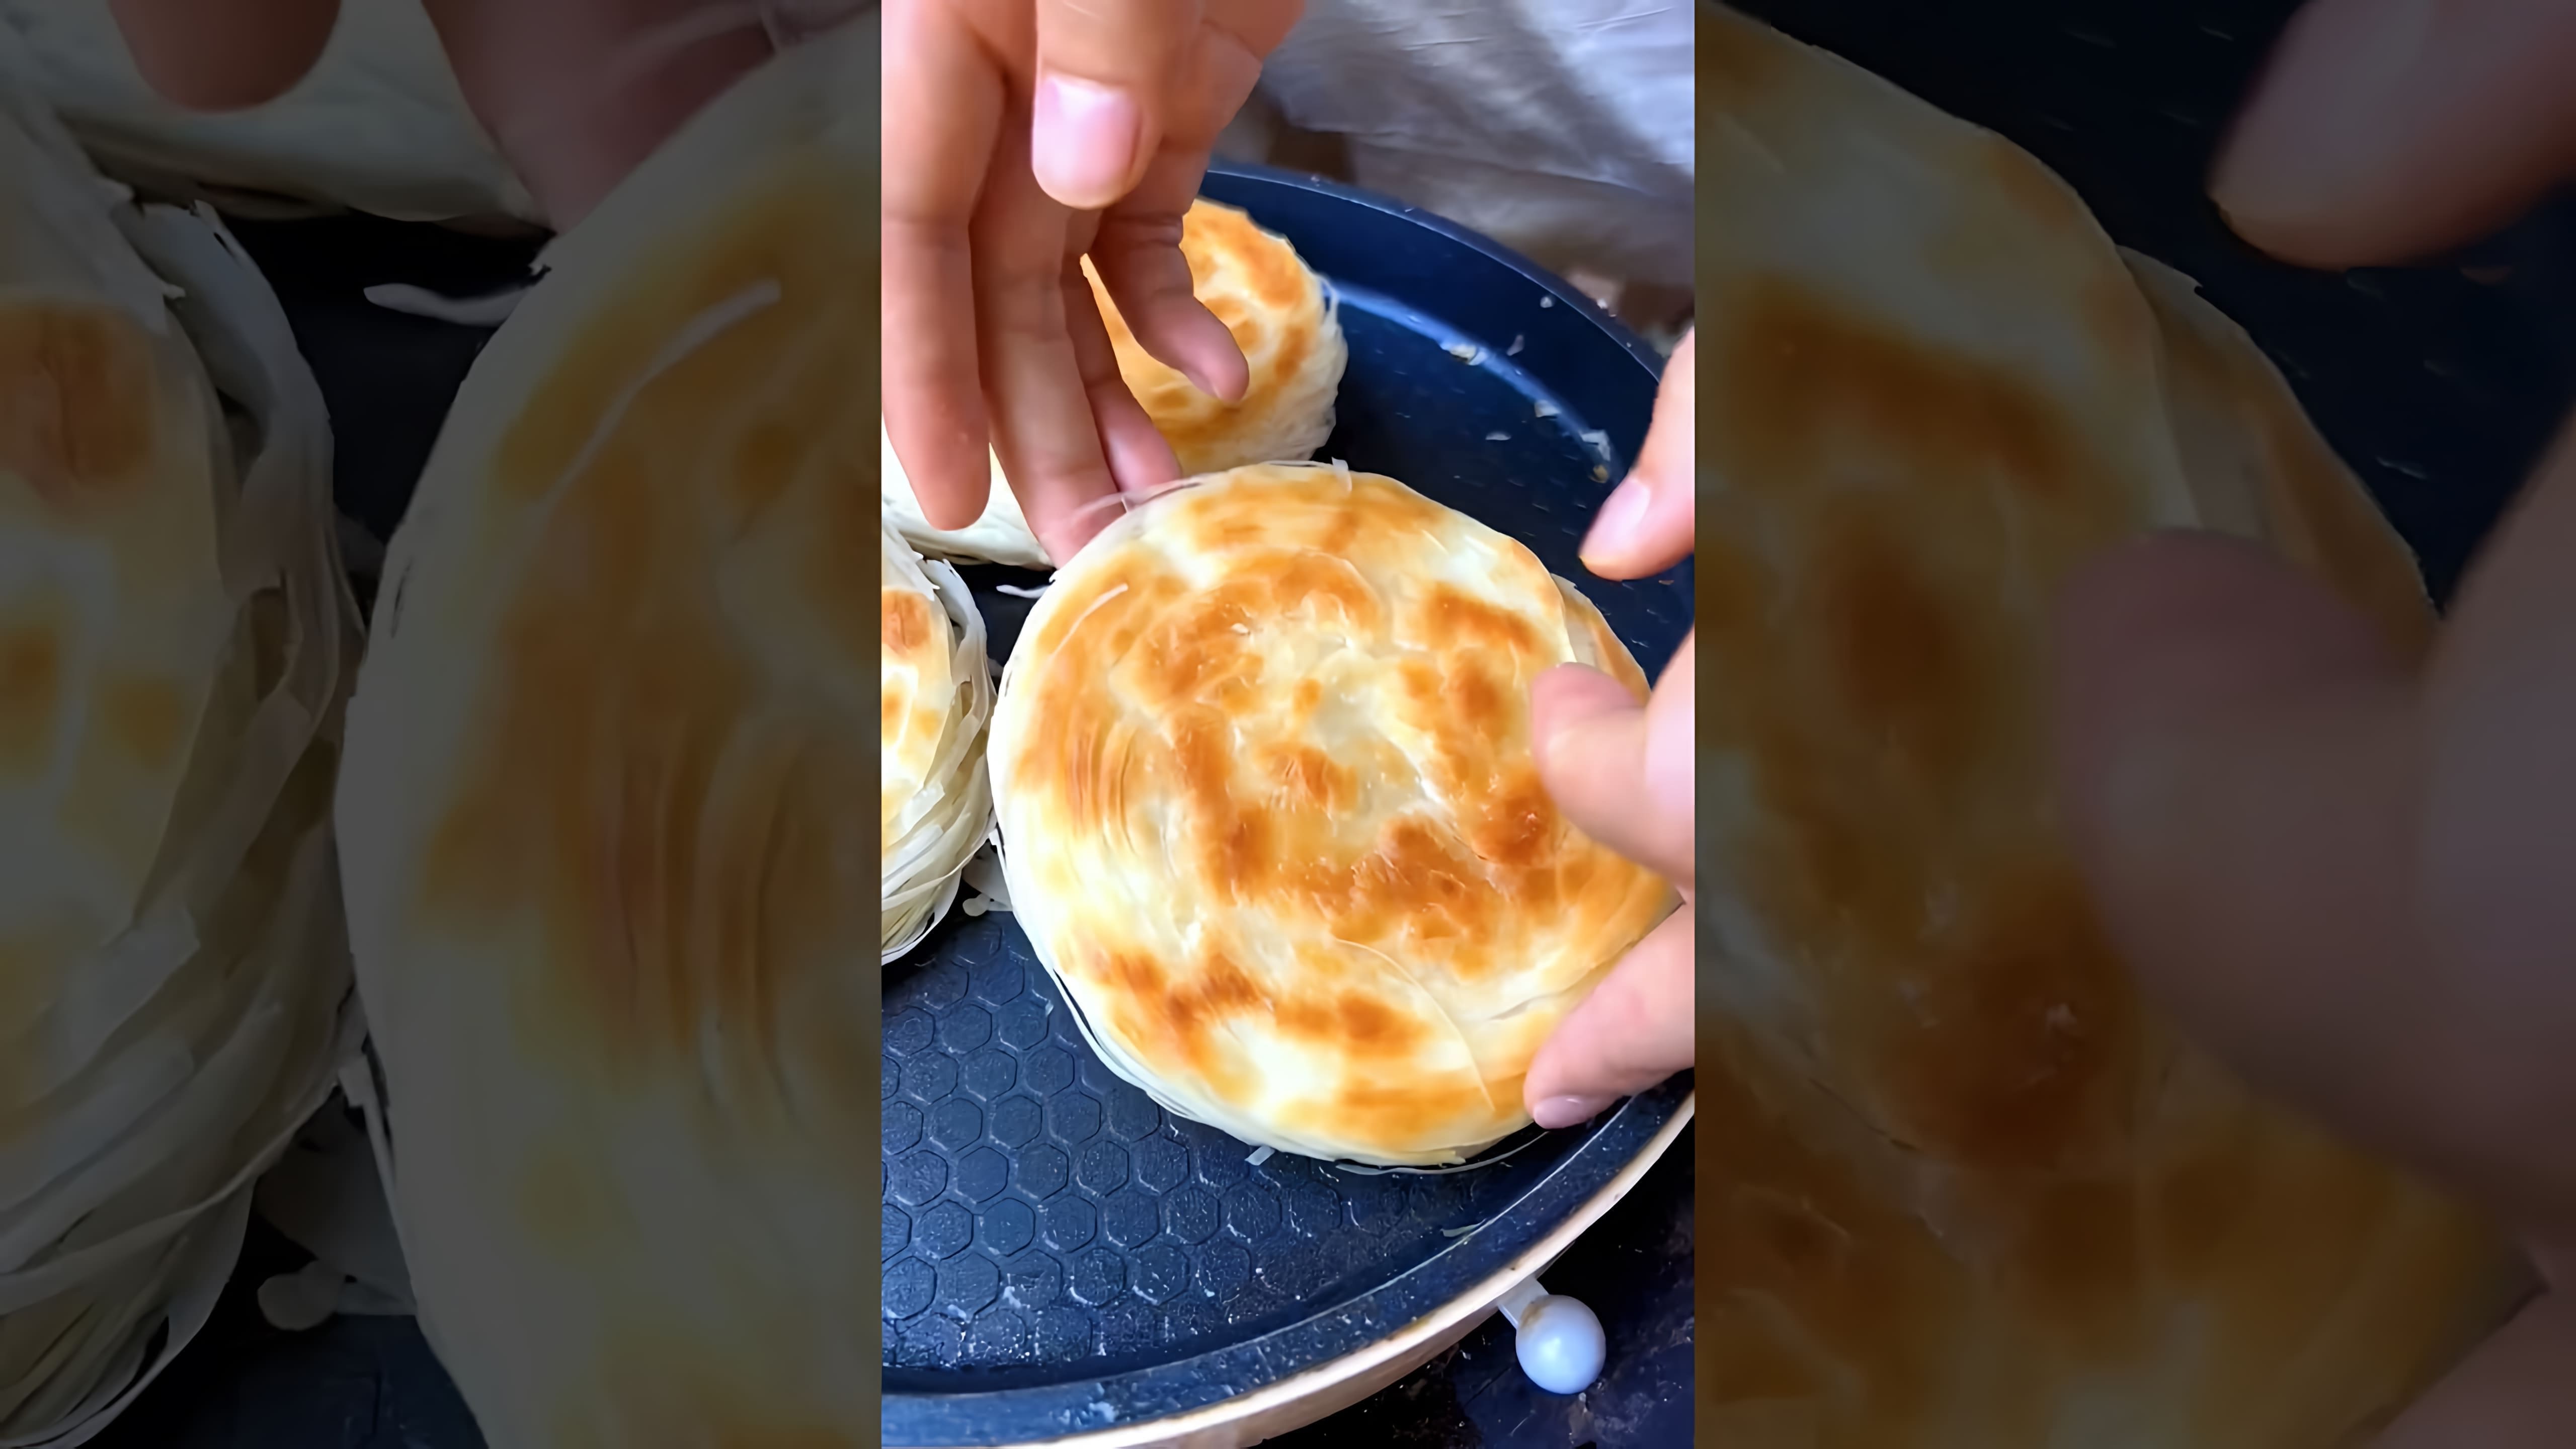 "Chinese Burger egg cake" - это видео-ролик, который демонстрирует приготовление необычного блюда - китайского бургера с яйцом